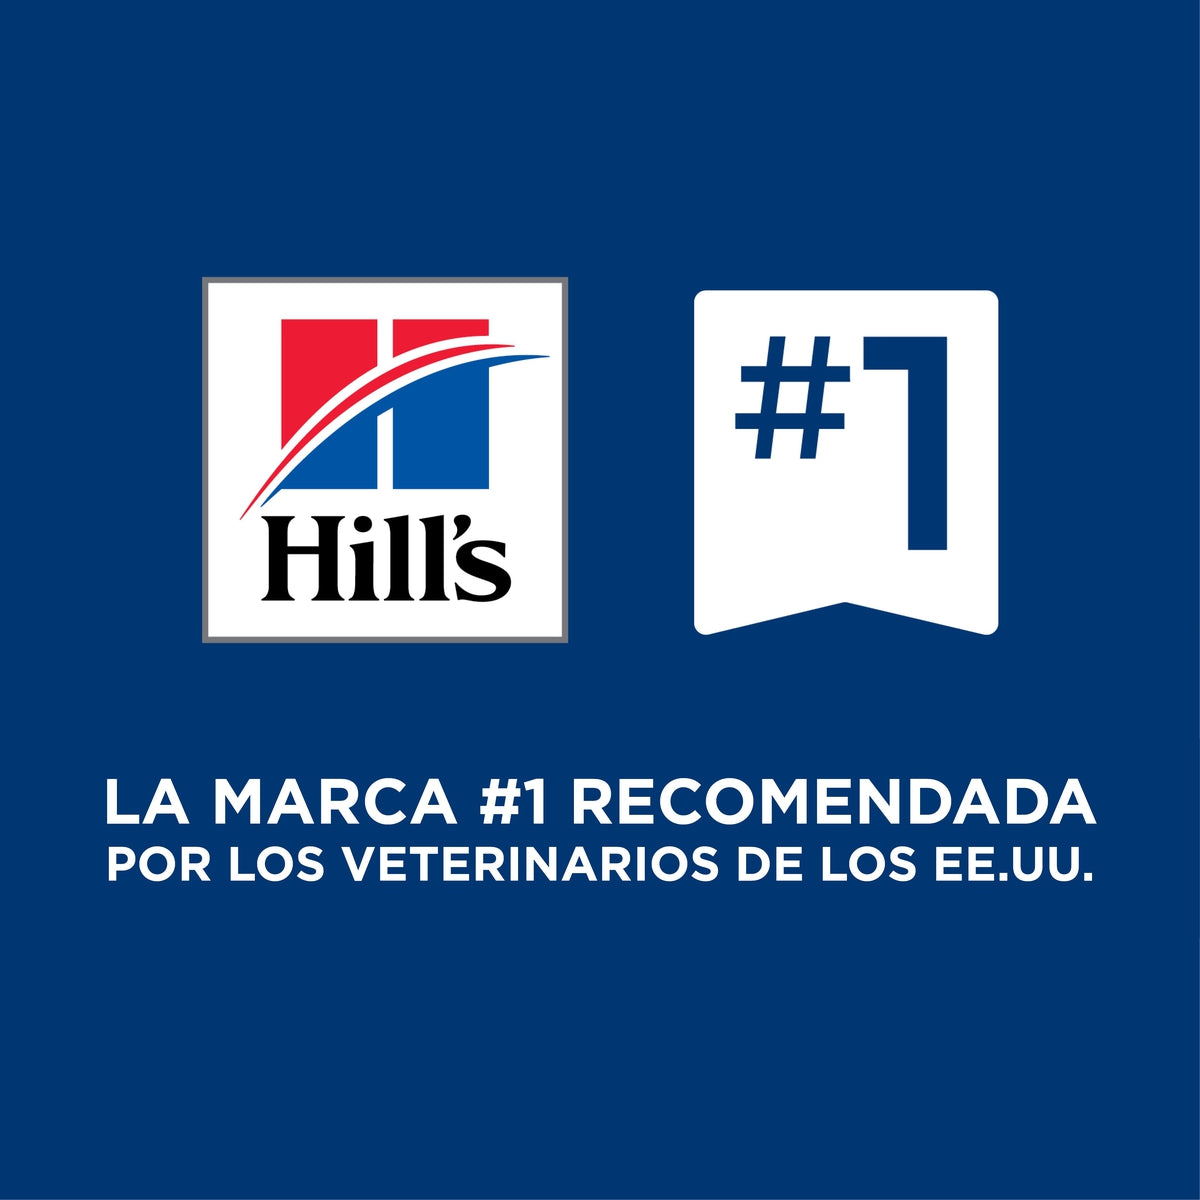 Hill's Prescription Diet w/d Manejo Peso/Glucosa Alimento Seco para Gato